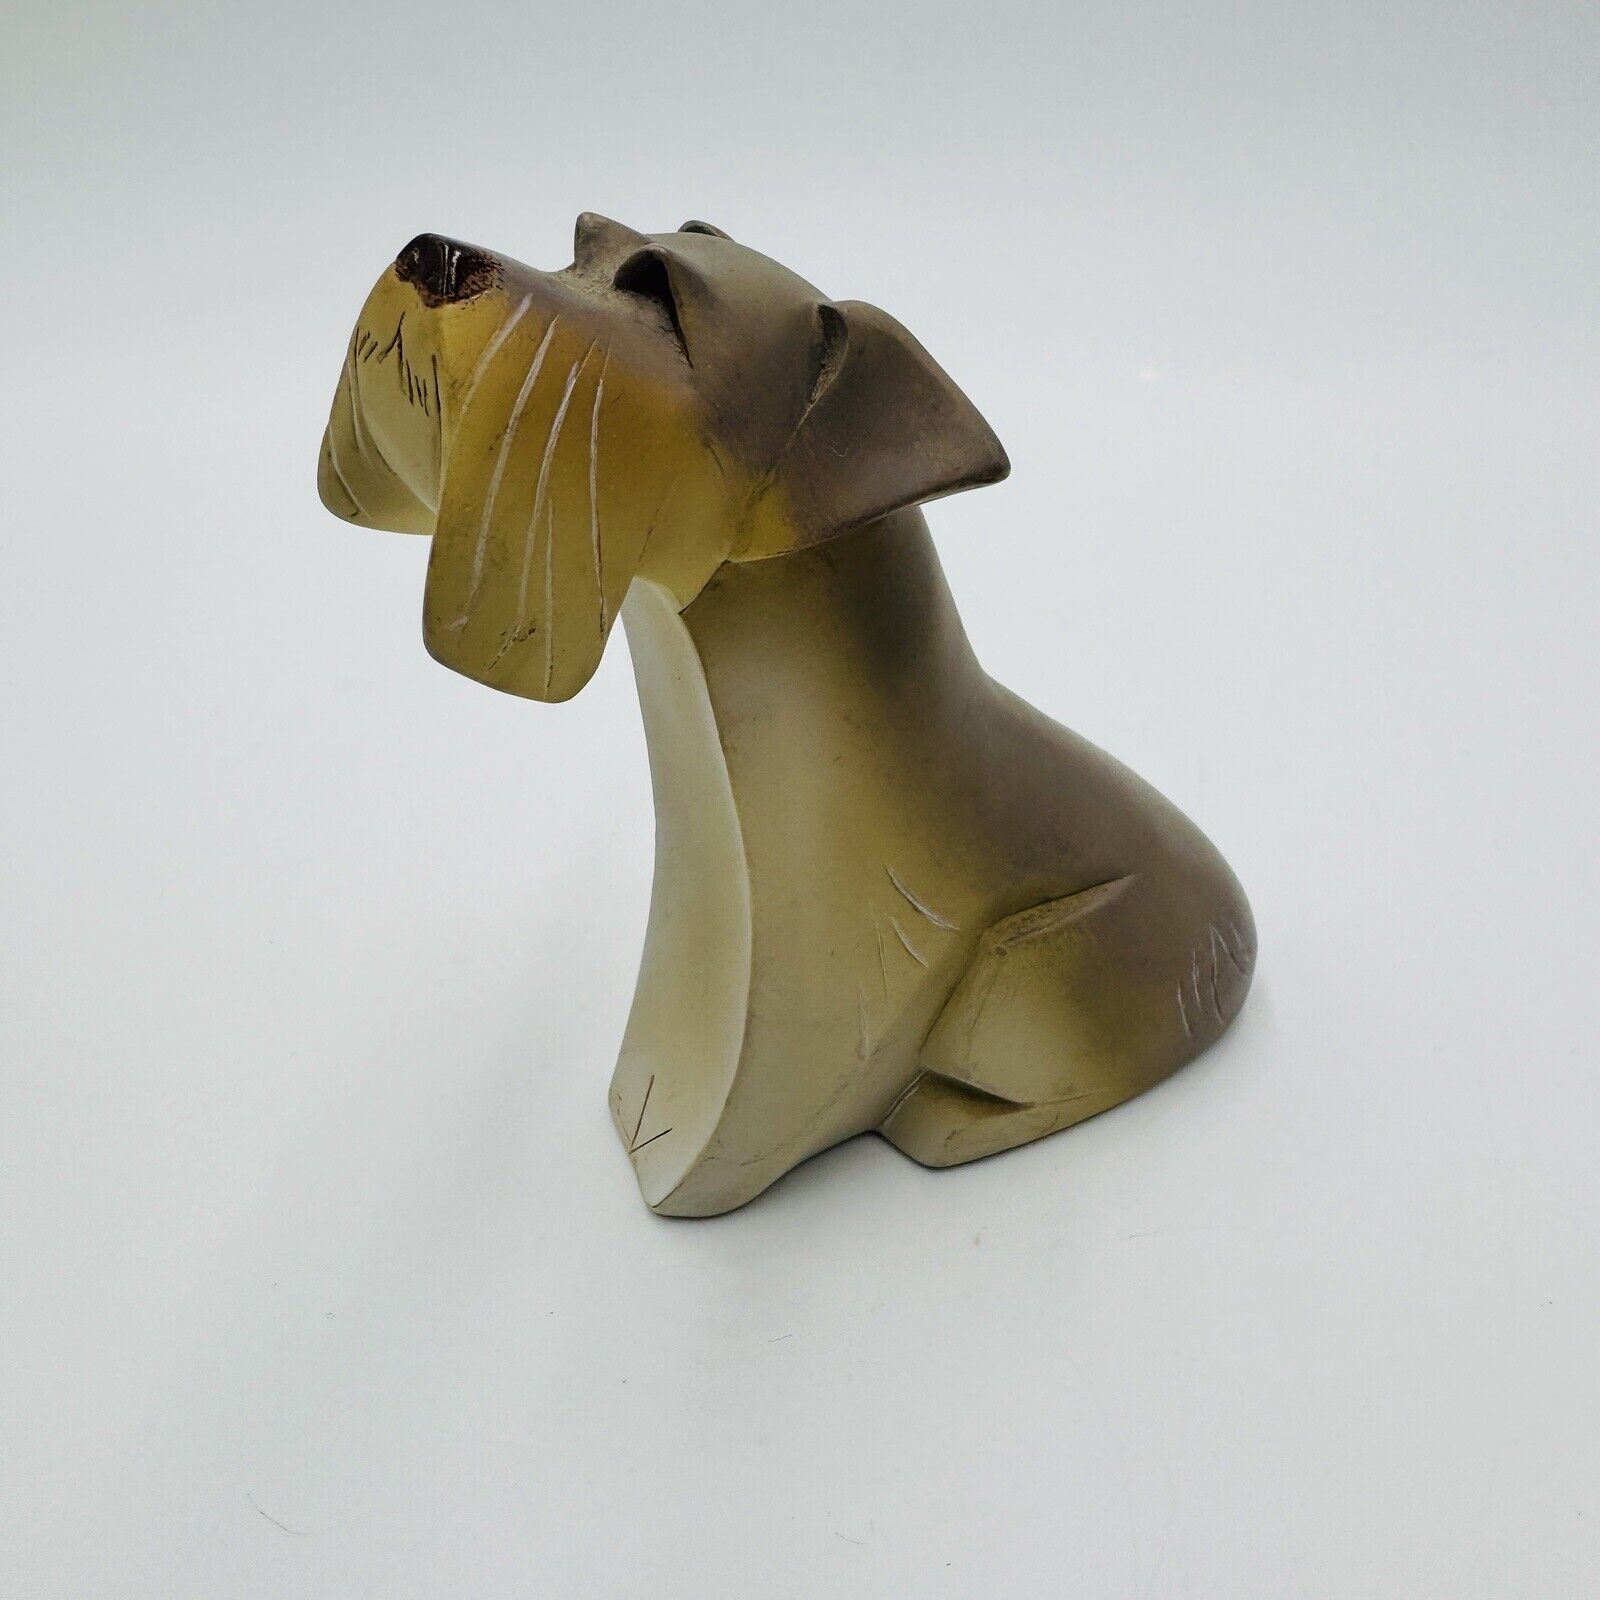 Pedigree Pals Schnauzer Arora Design 2012 Dean Kendrick Dog Figurine Resin